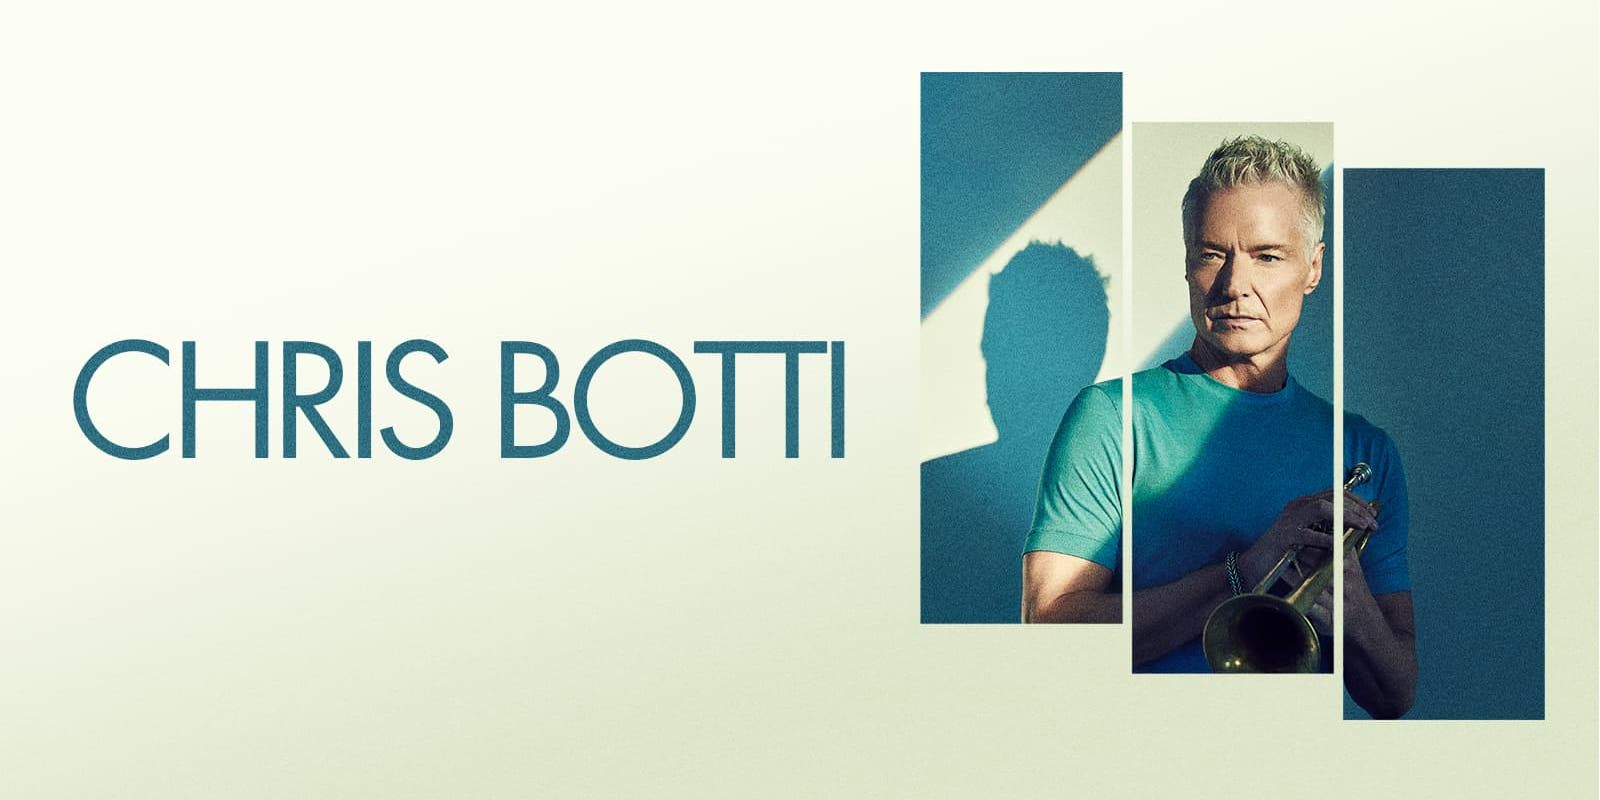 Chris Botti promotional image